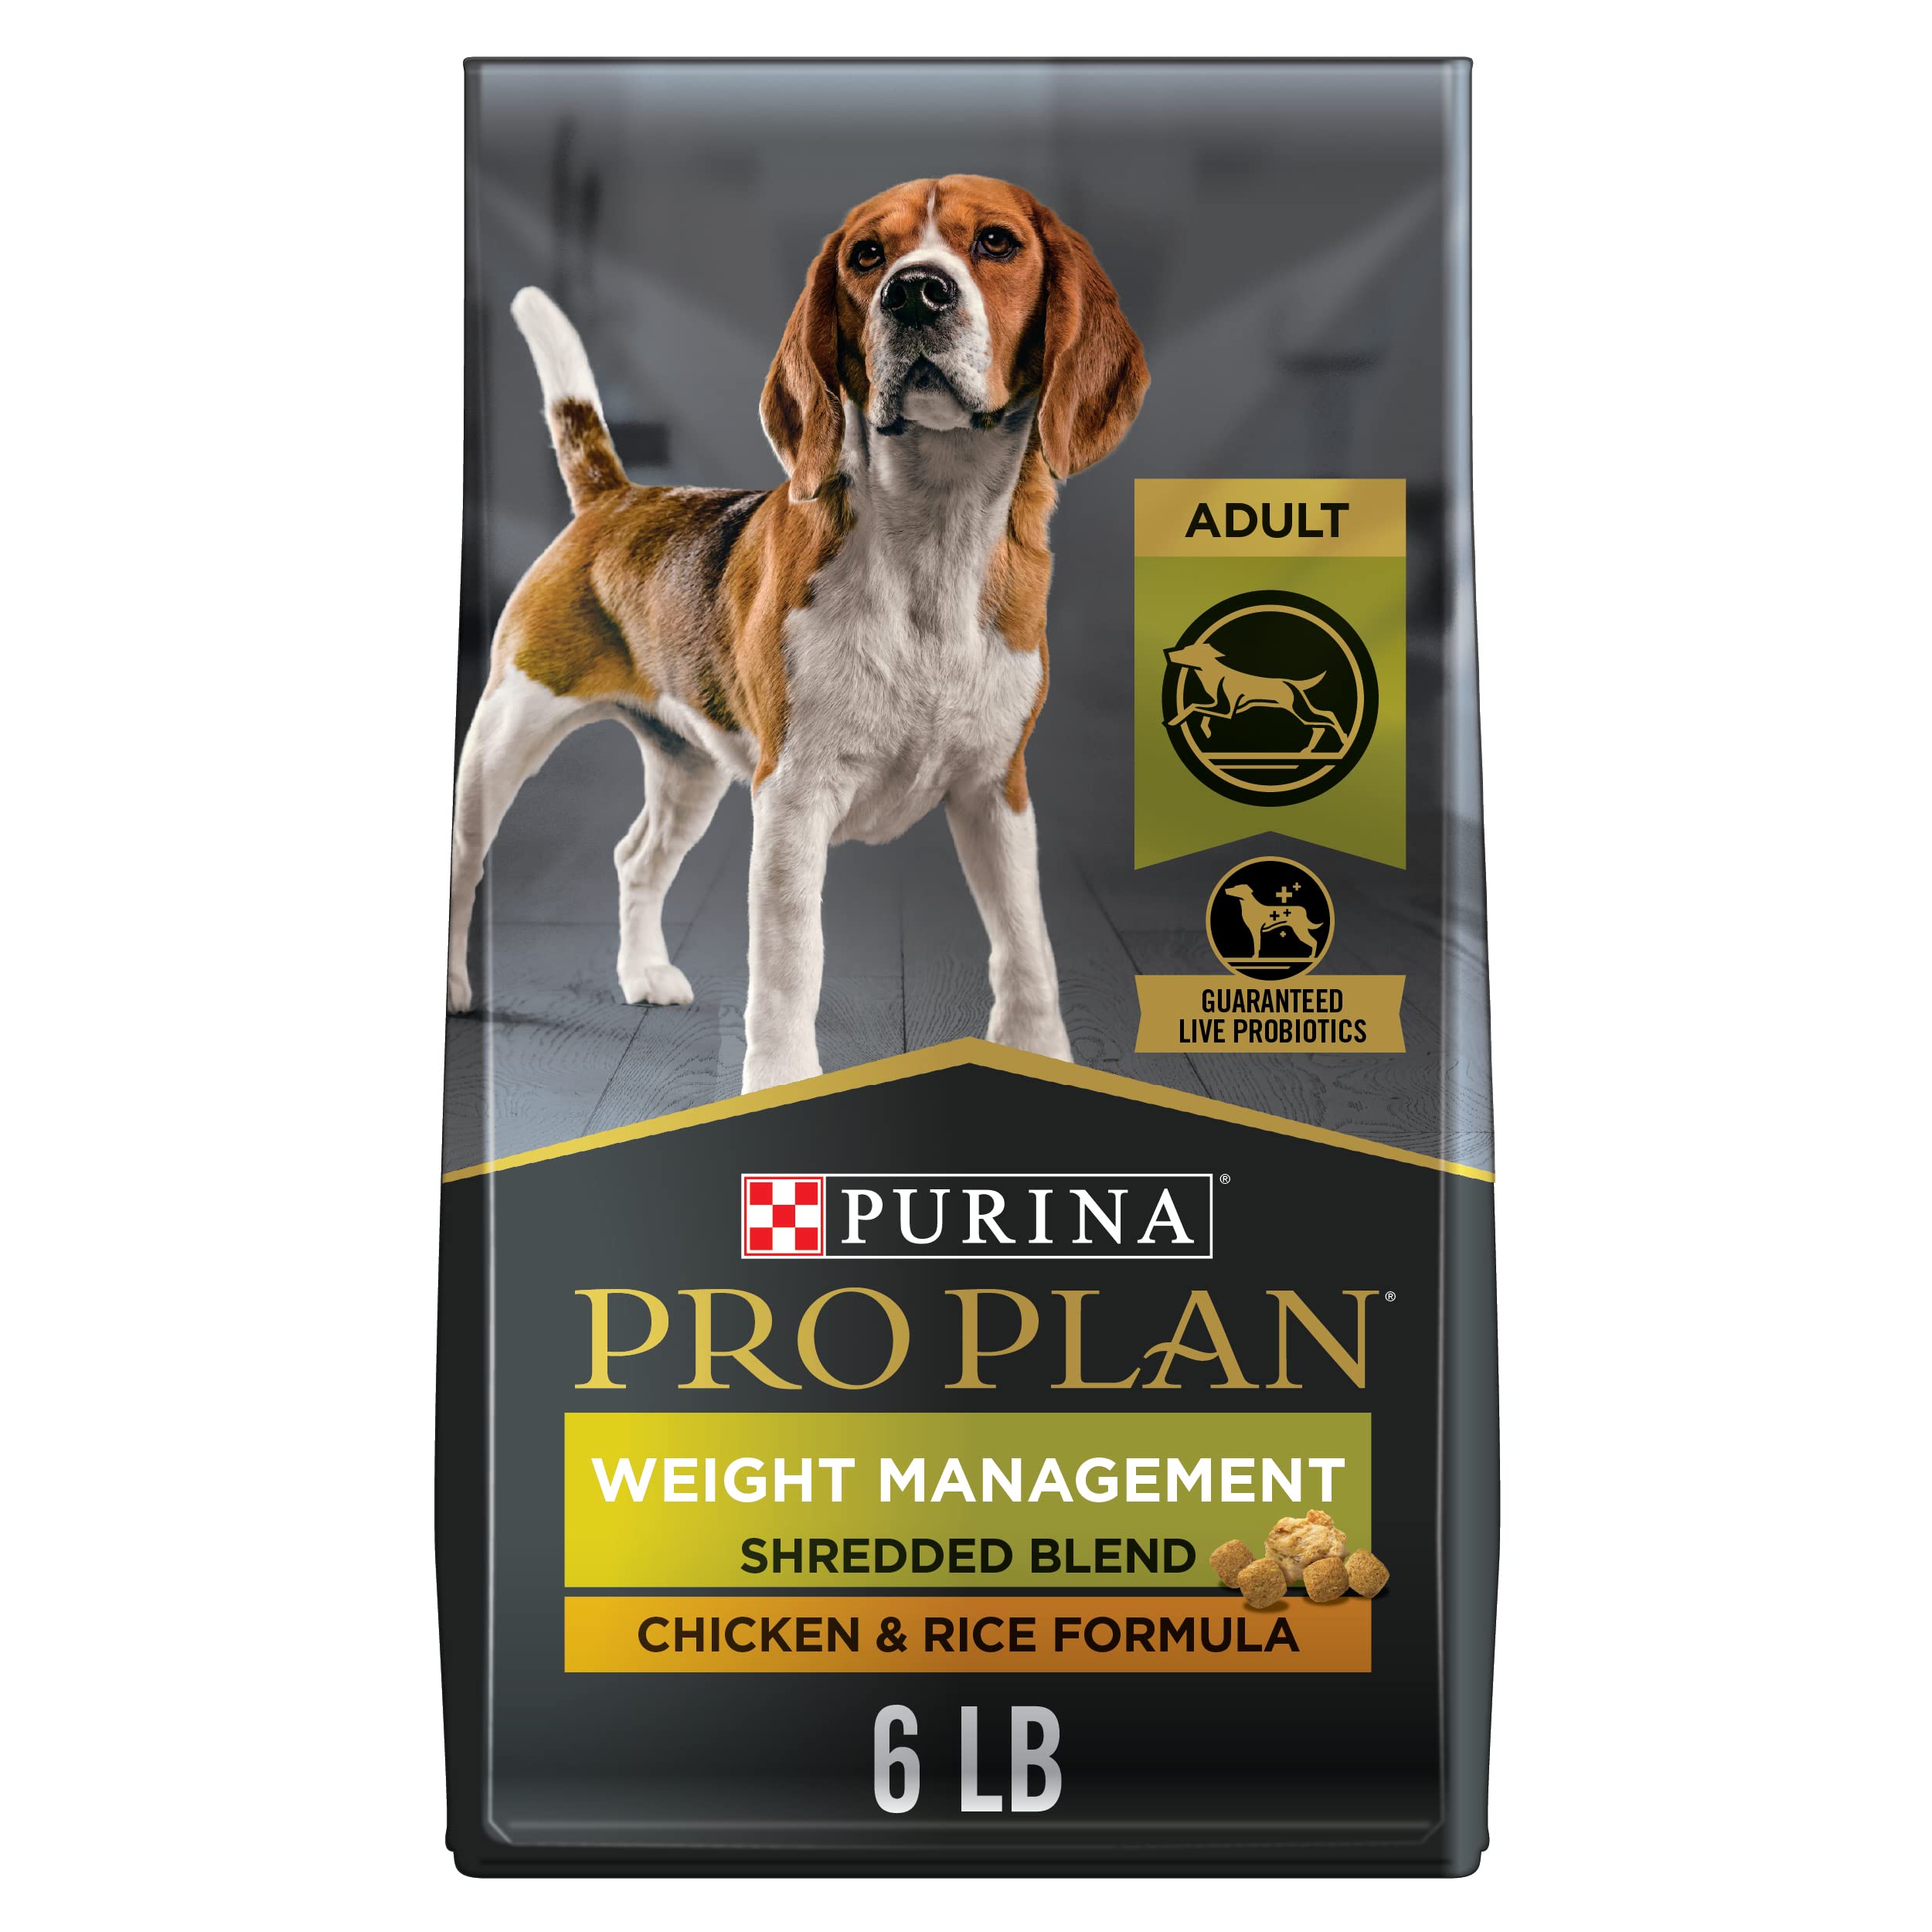 Purina Control de peso Alimento seco para perros adulto...